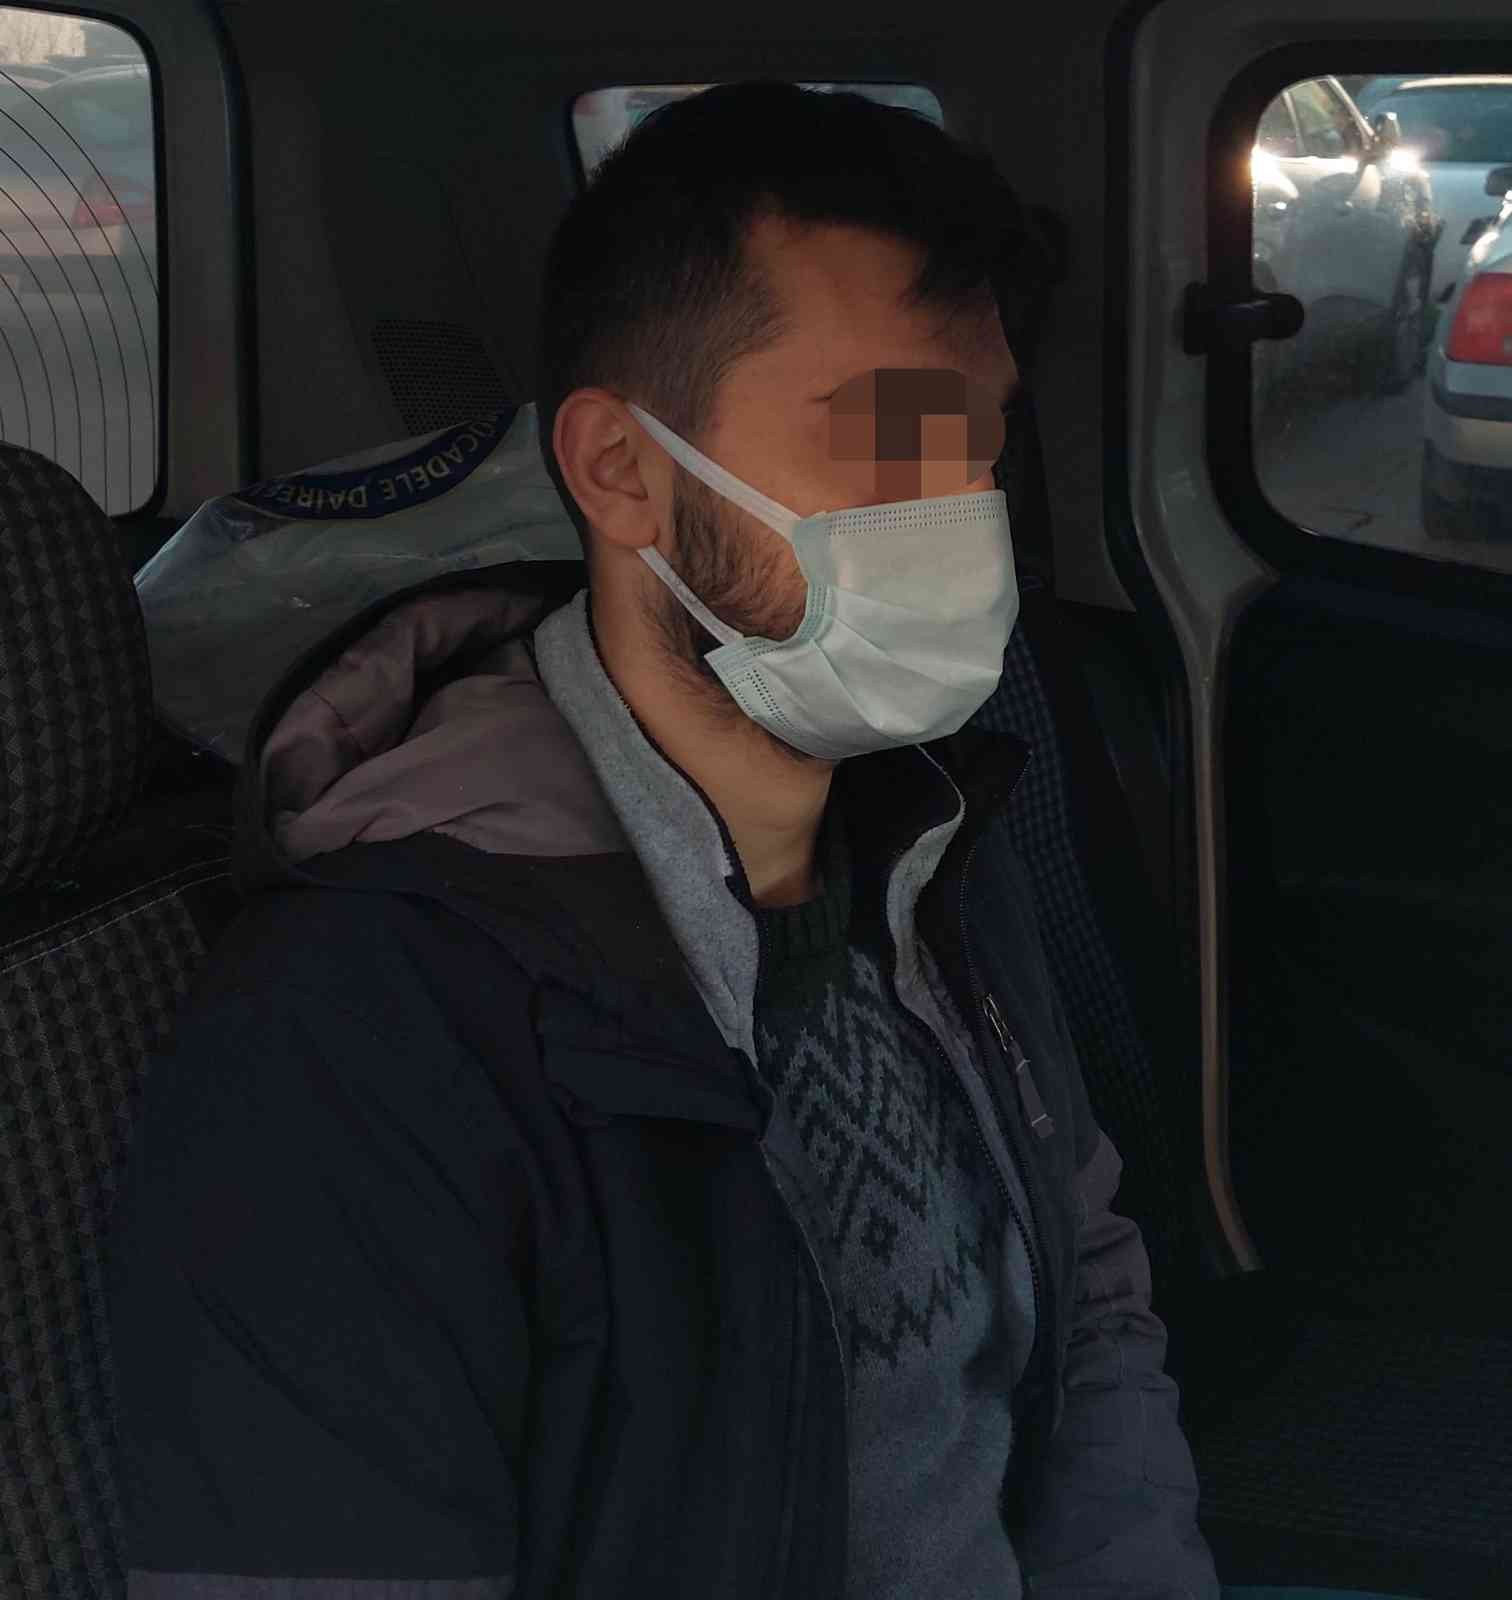 Samsun’da DHKP/C operasyonunda gözaltına alınan 1 kişi tutuklandı #samsun